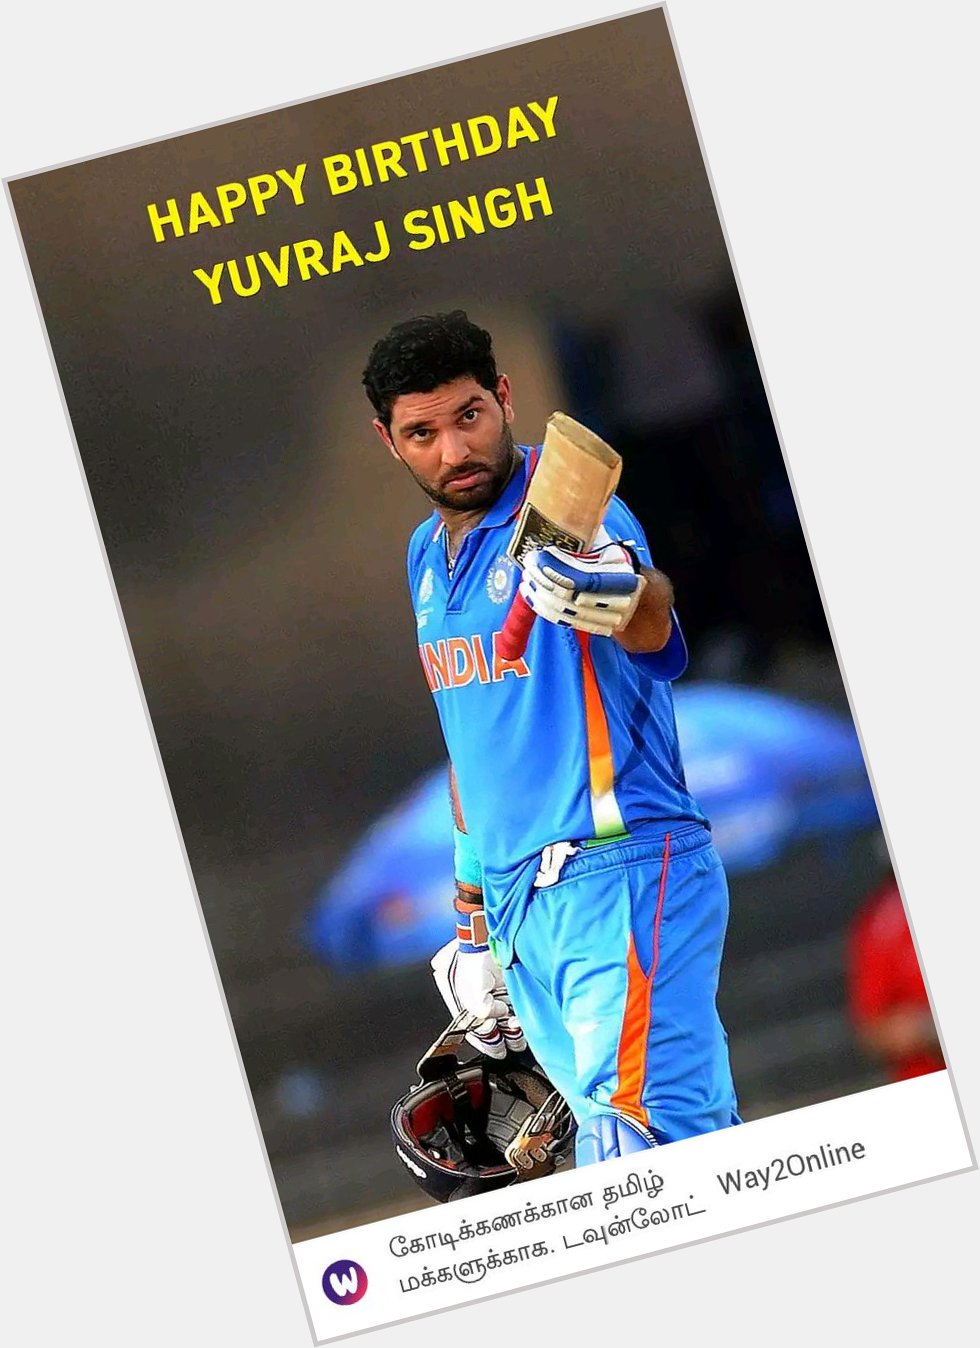 Happy birthday Yuvraj Singh. 